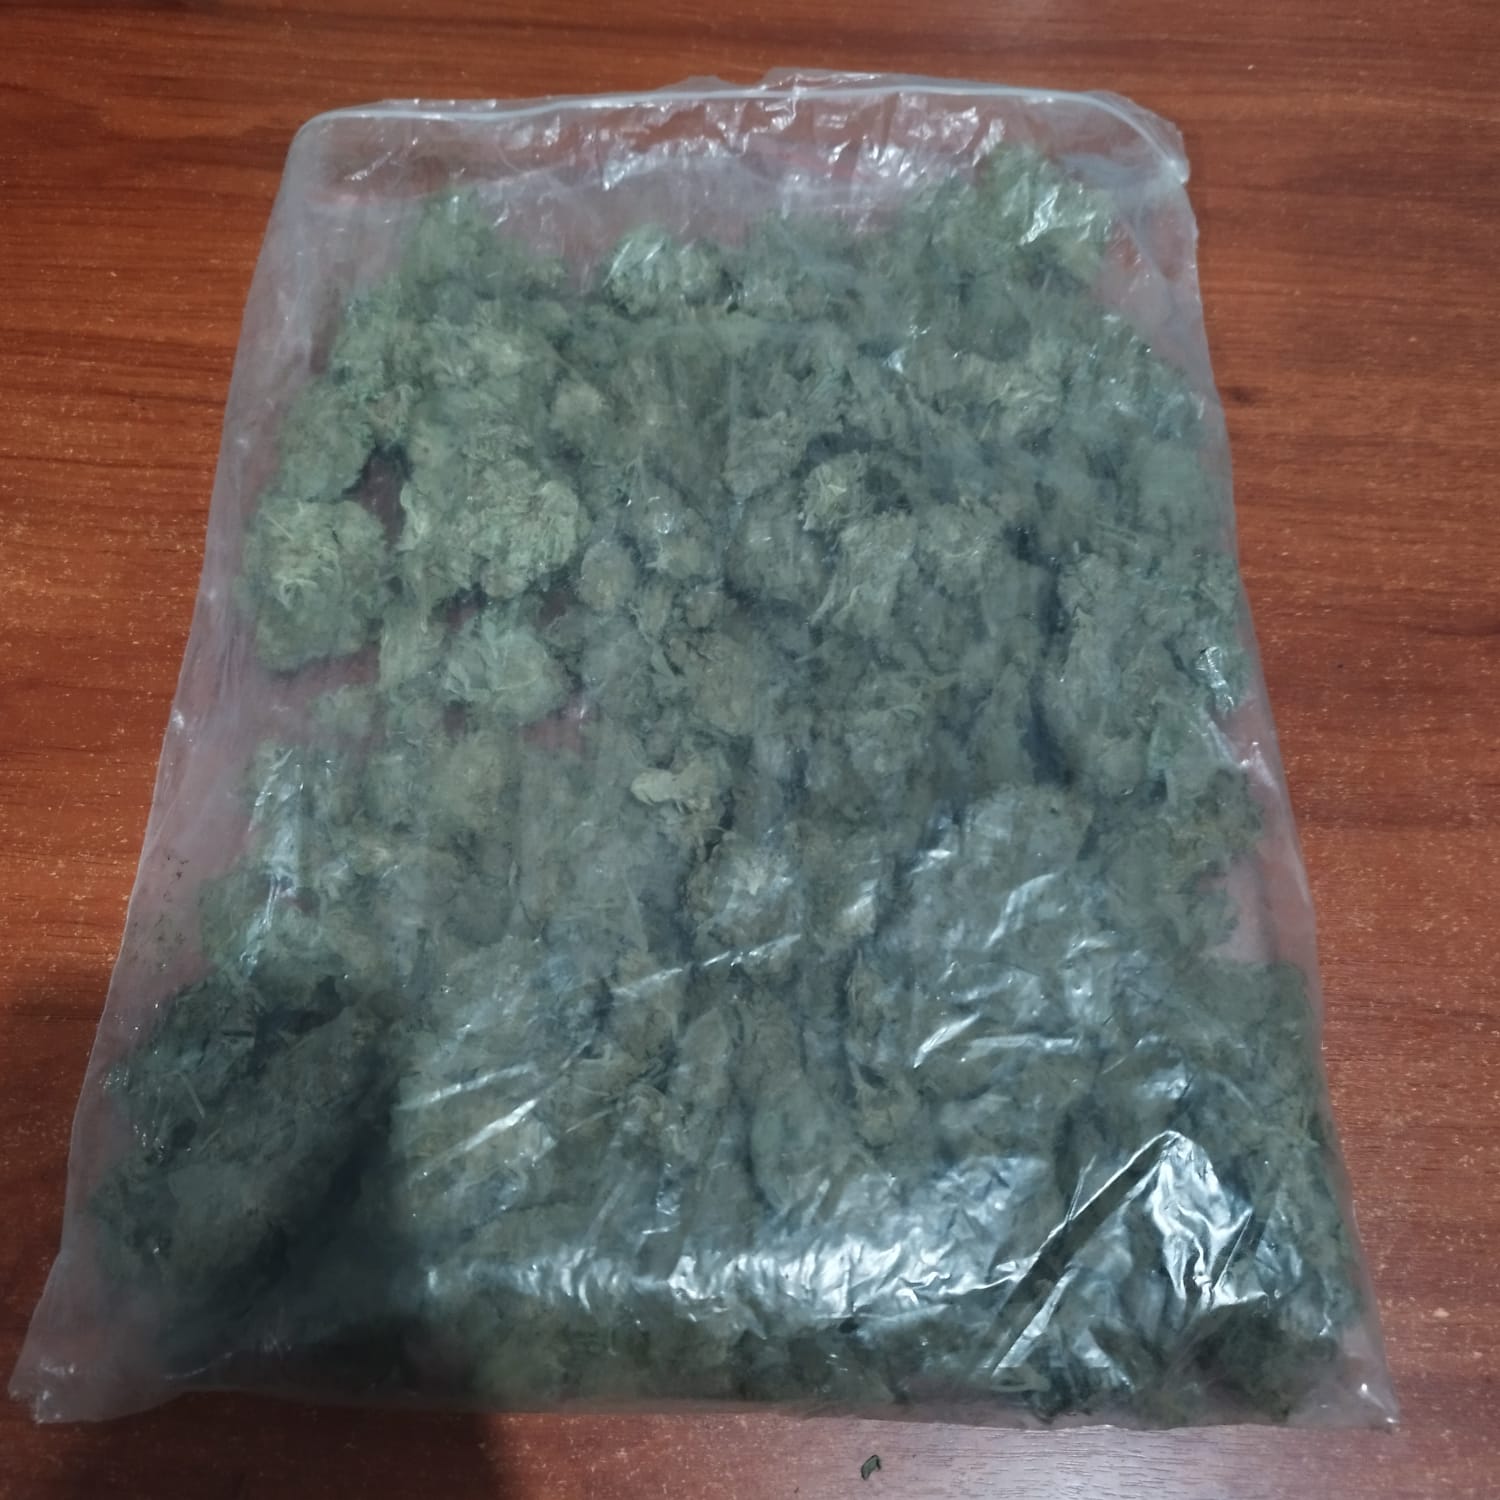 Esta es la droga que fue encontrada en posesión del implicado y que fue decomisada por la Policía.